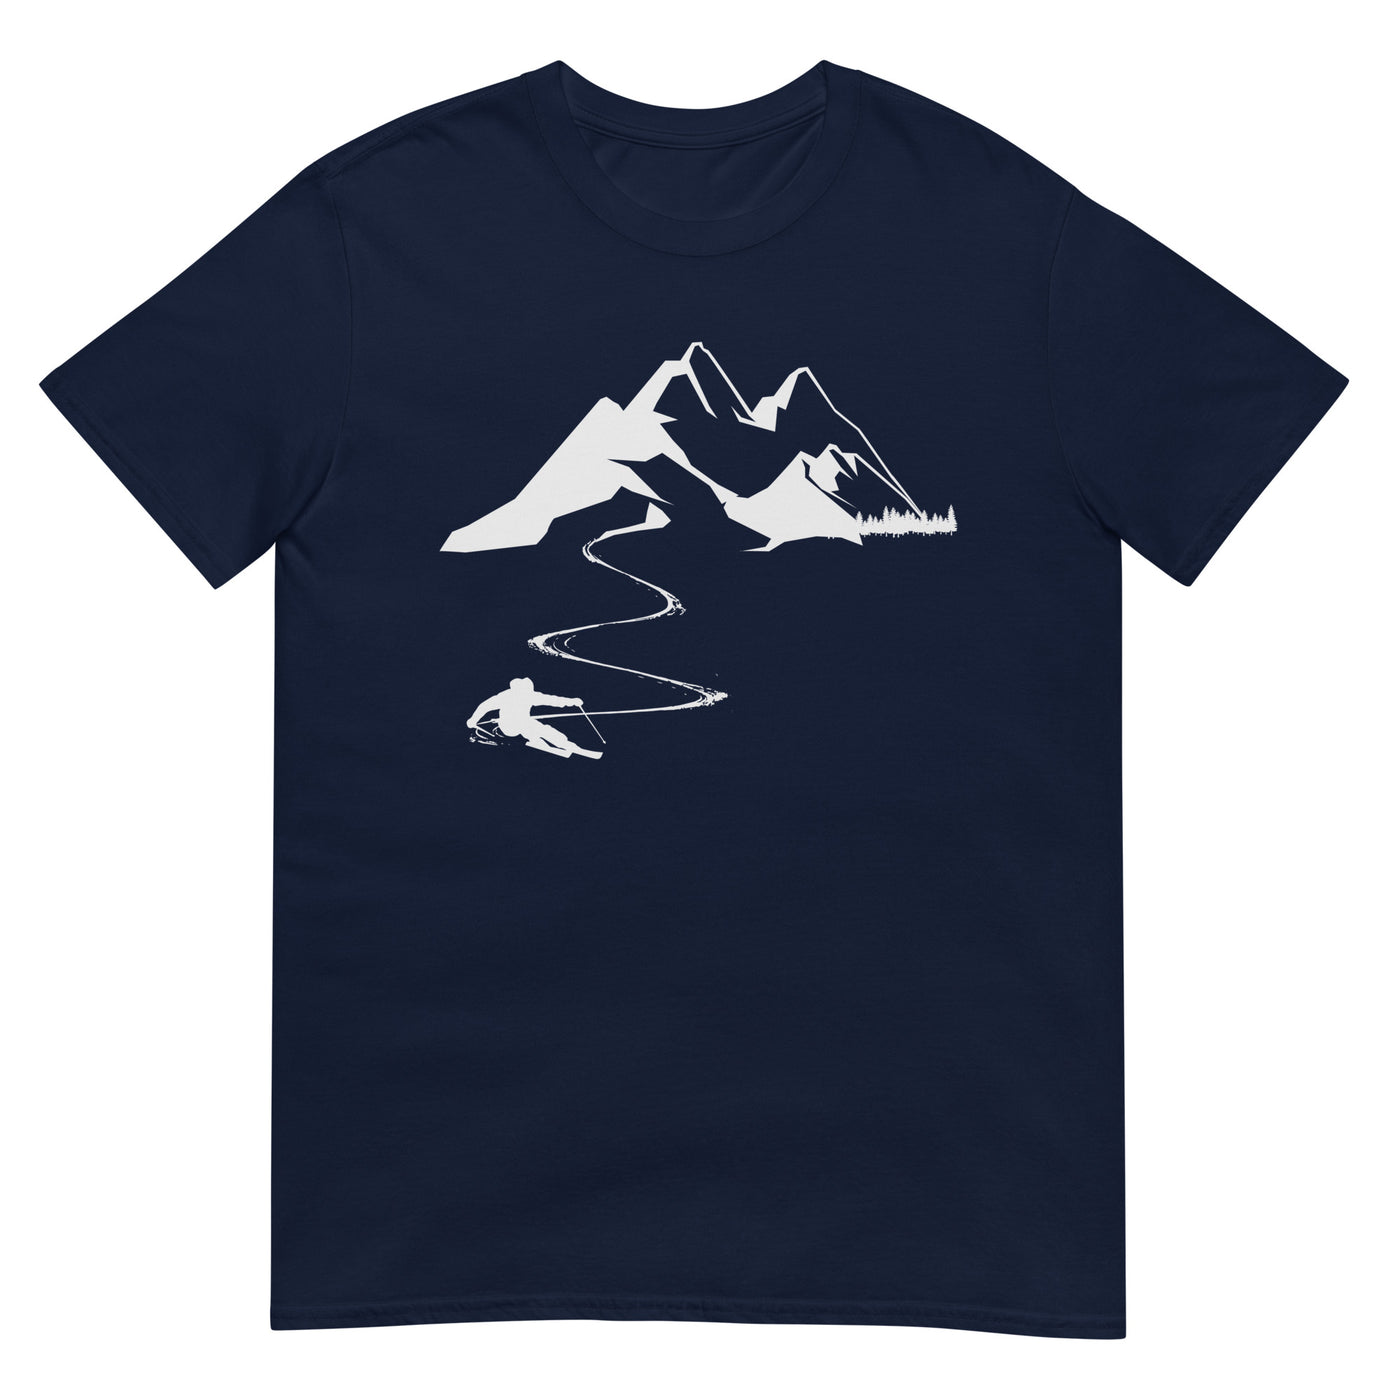 Skisüchtig - T-Shirt (Unisex) klettern ski xxx yyy zzz Navy